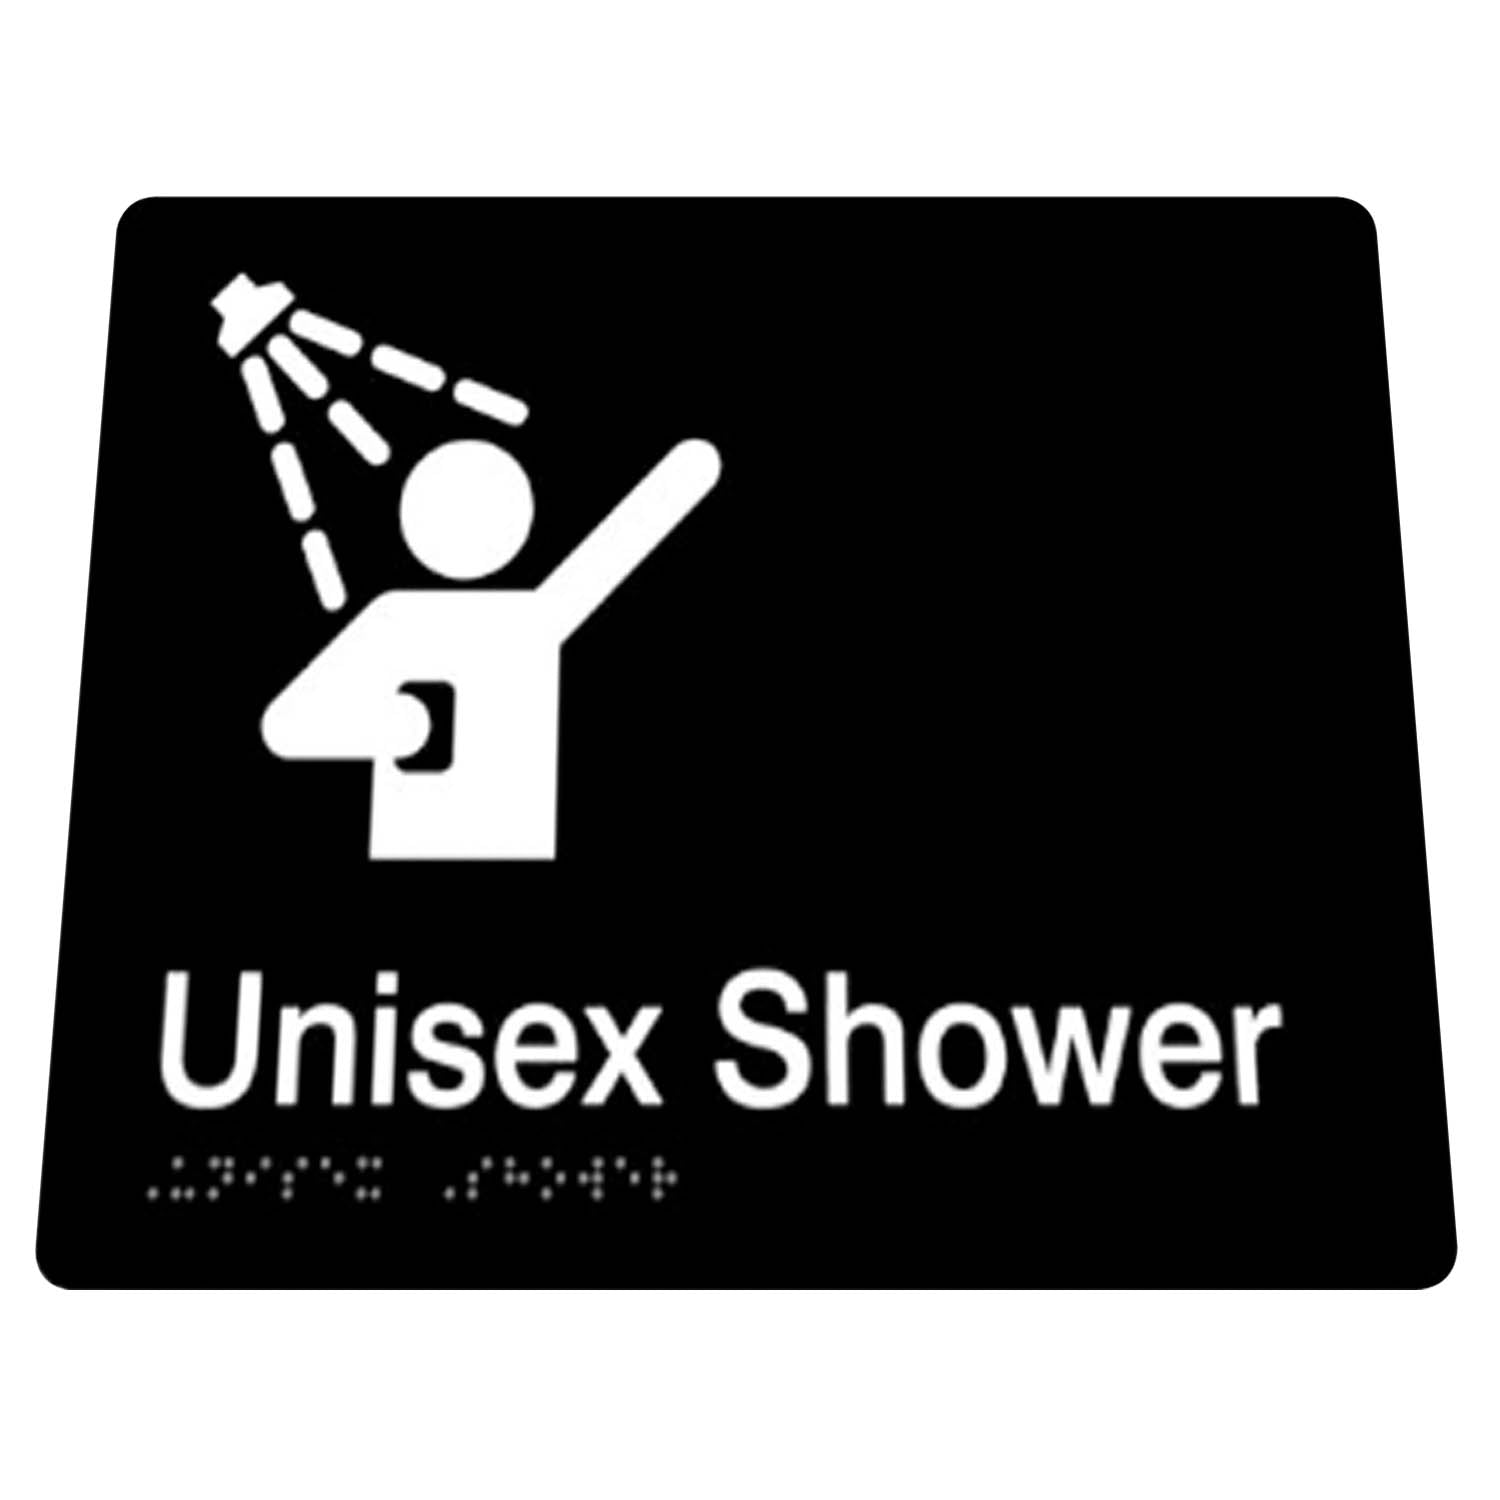 Unisex Shower Braille Sign 180mm x 180mm x 3mm Black